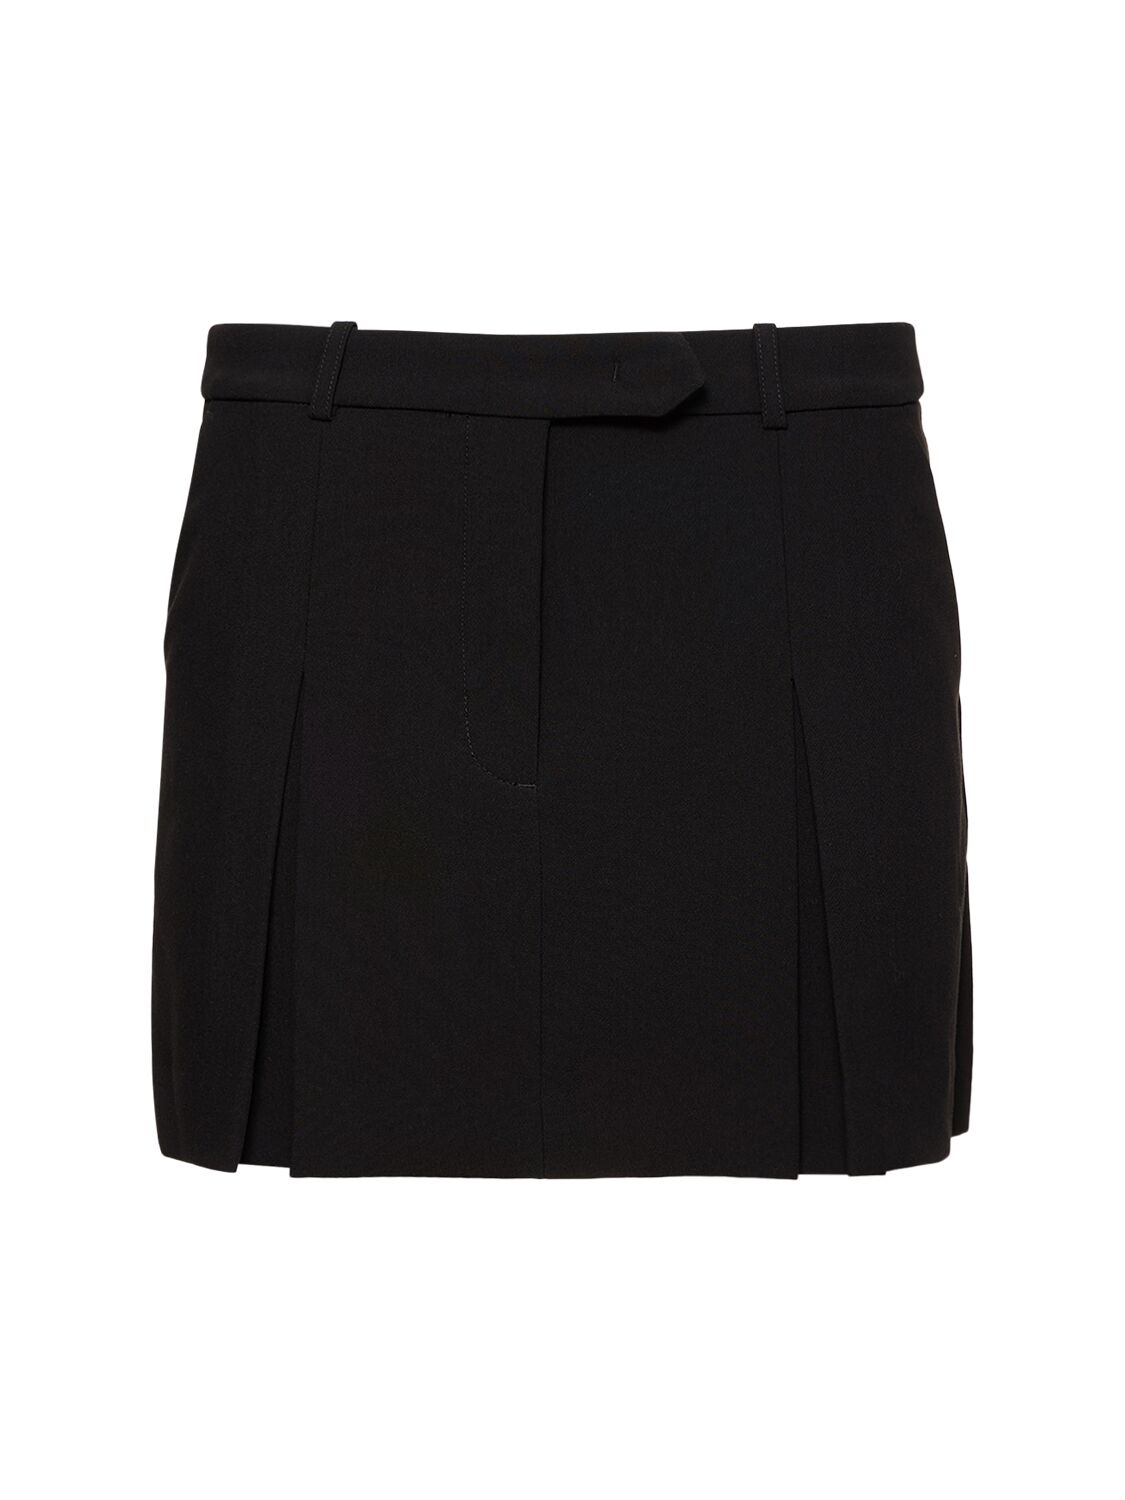 Spencer Tailored Tech Mini Skirt image